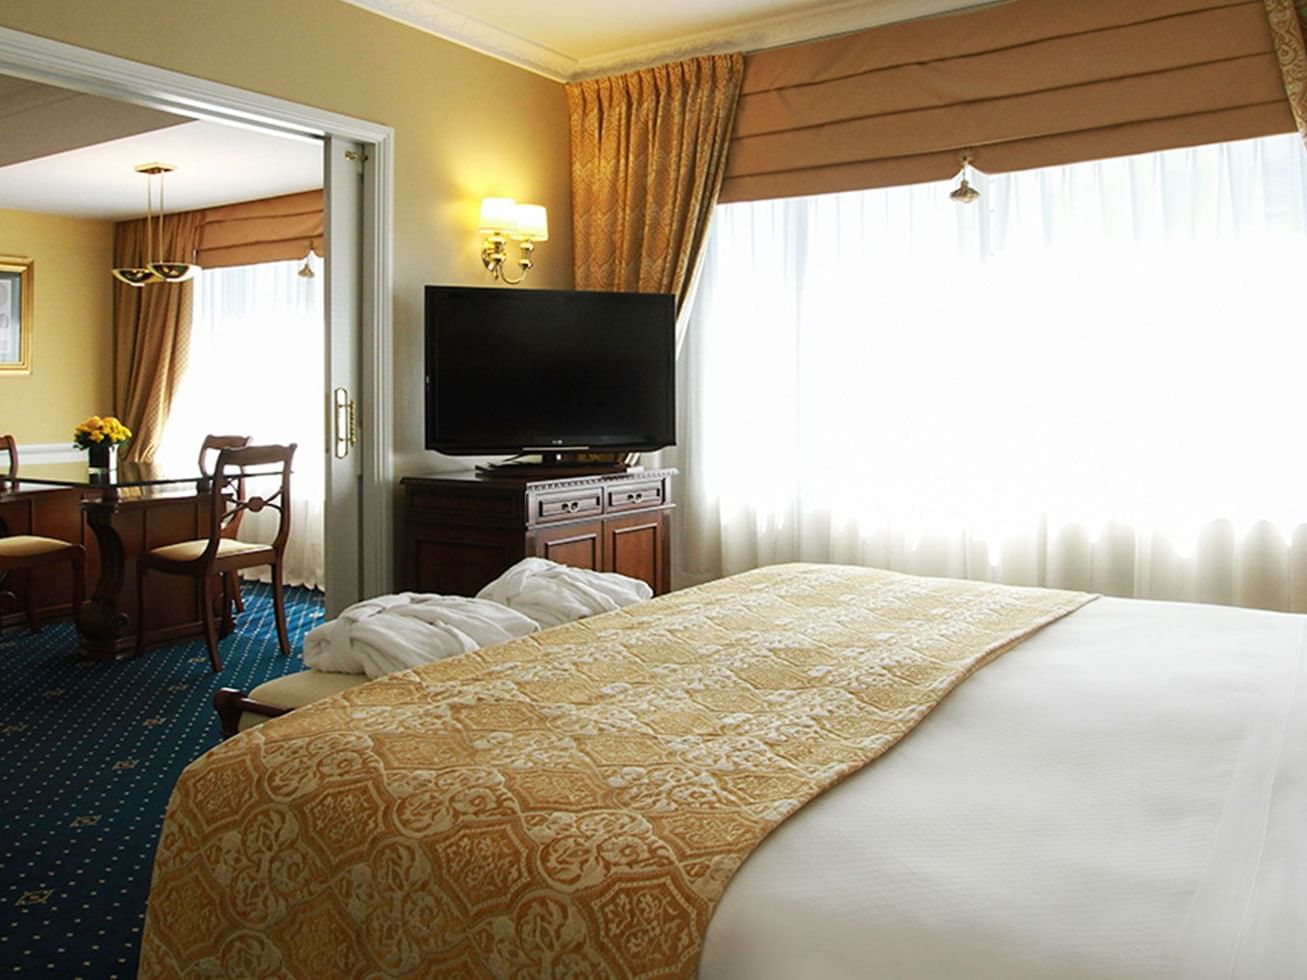 
Una cama, TV y sala de estar en una suite en Hotel Emperador Buenos